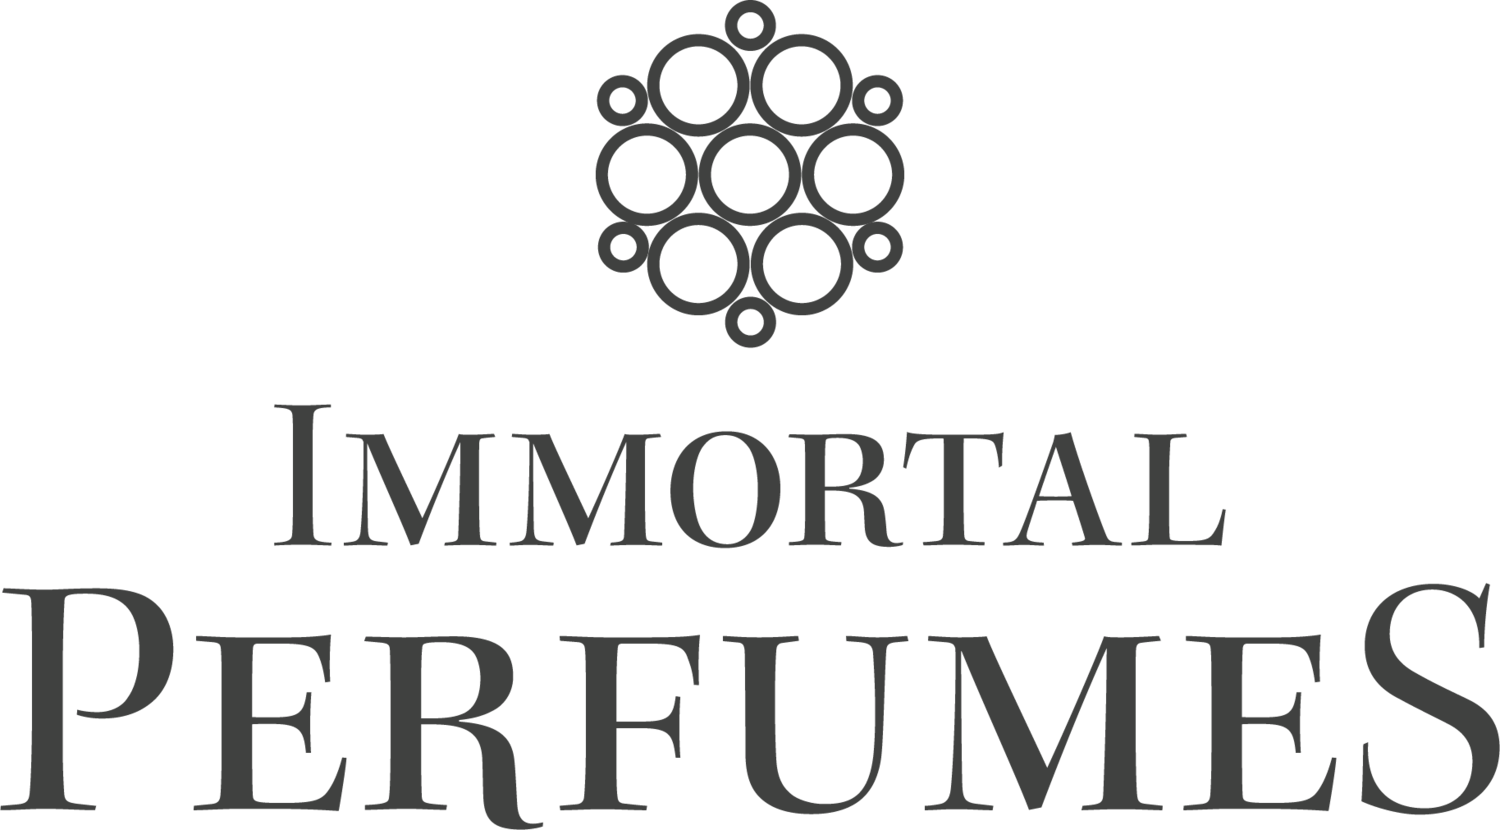 Immortal Perfumes